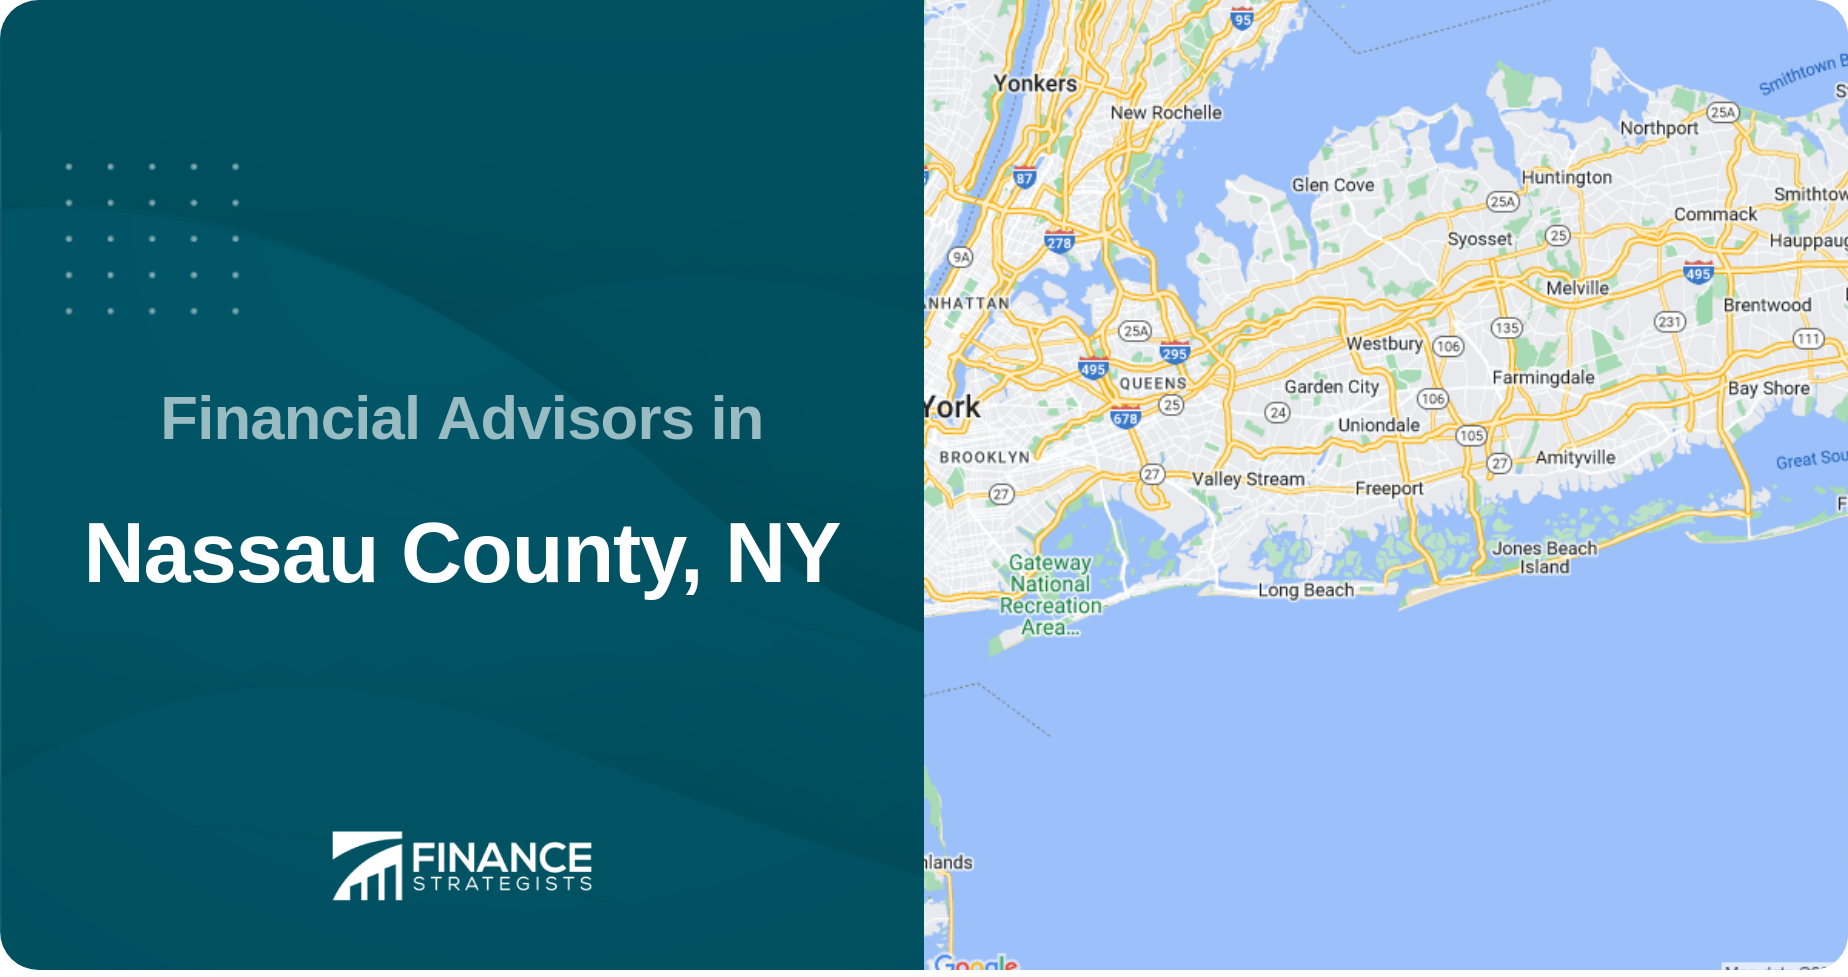 Financial Advisors in Nassau County, NY